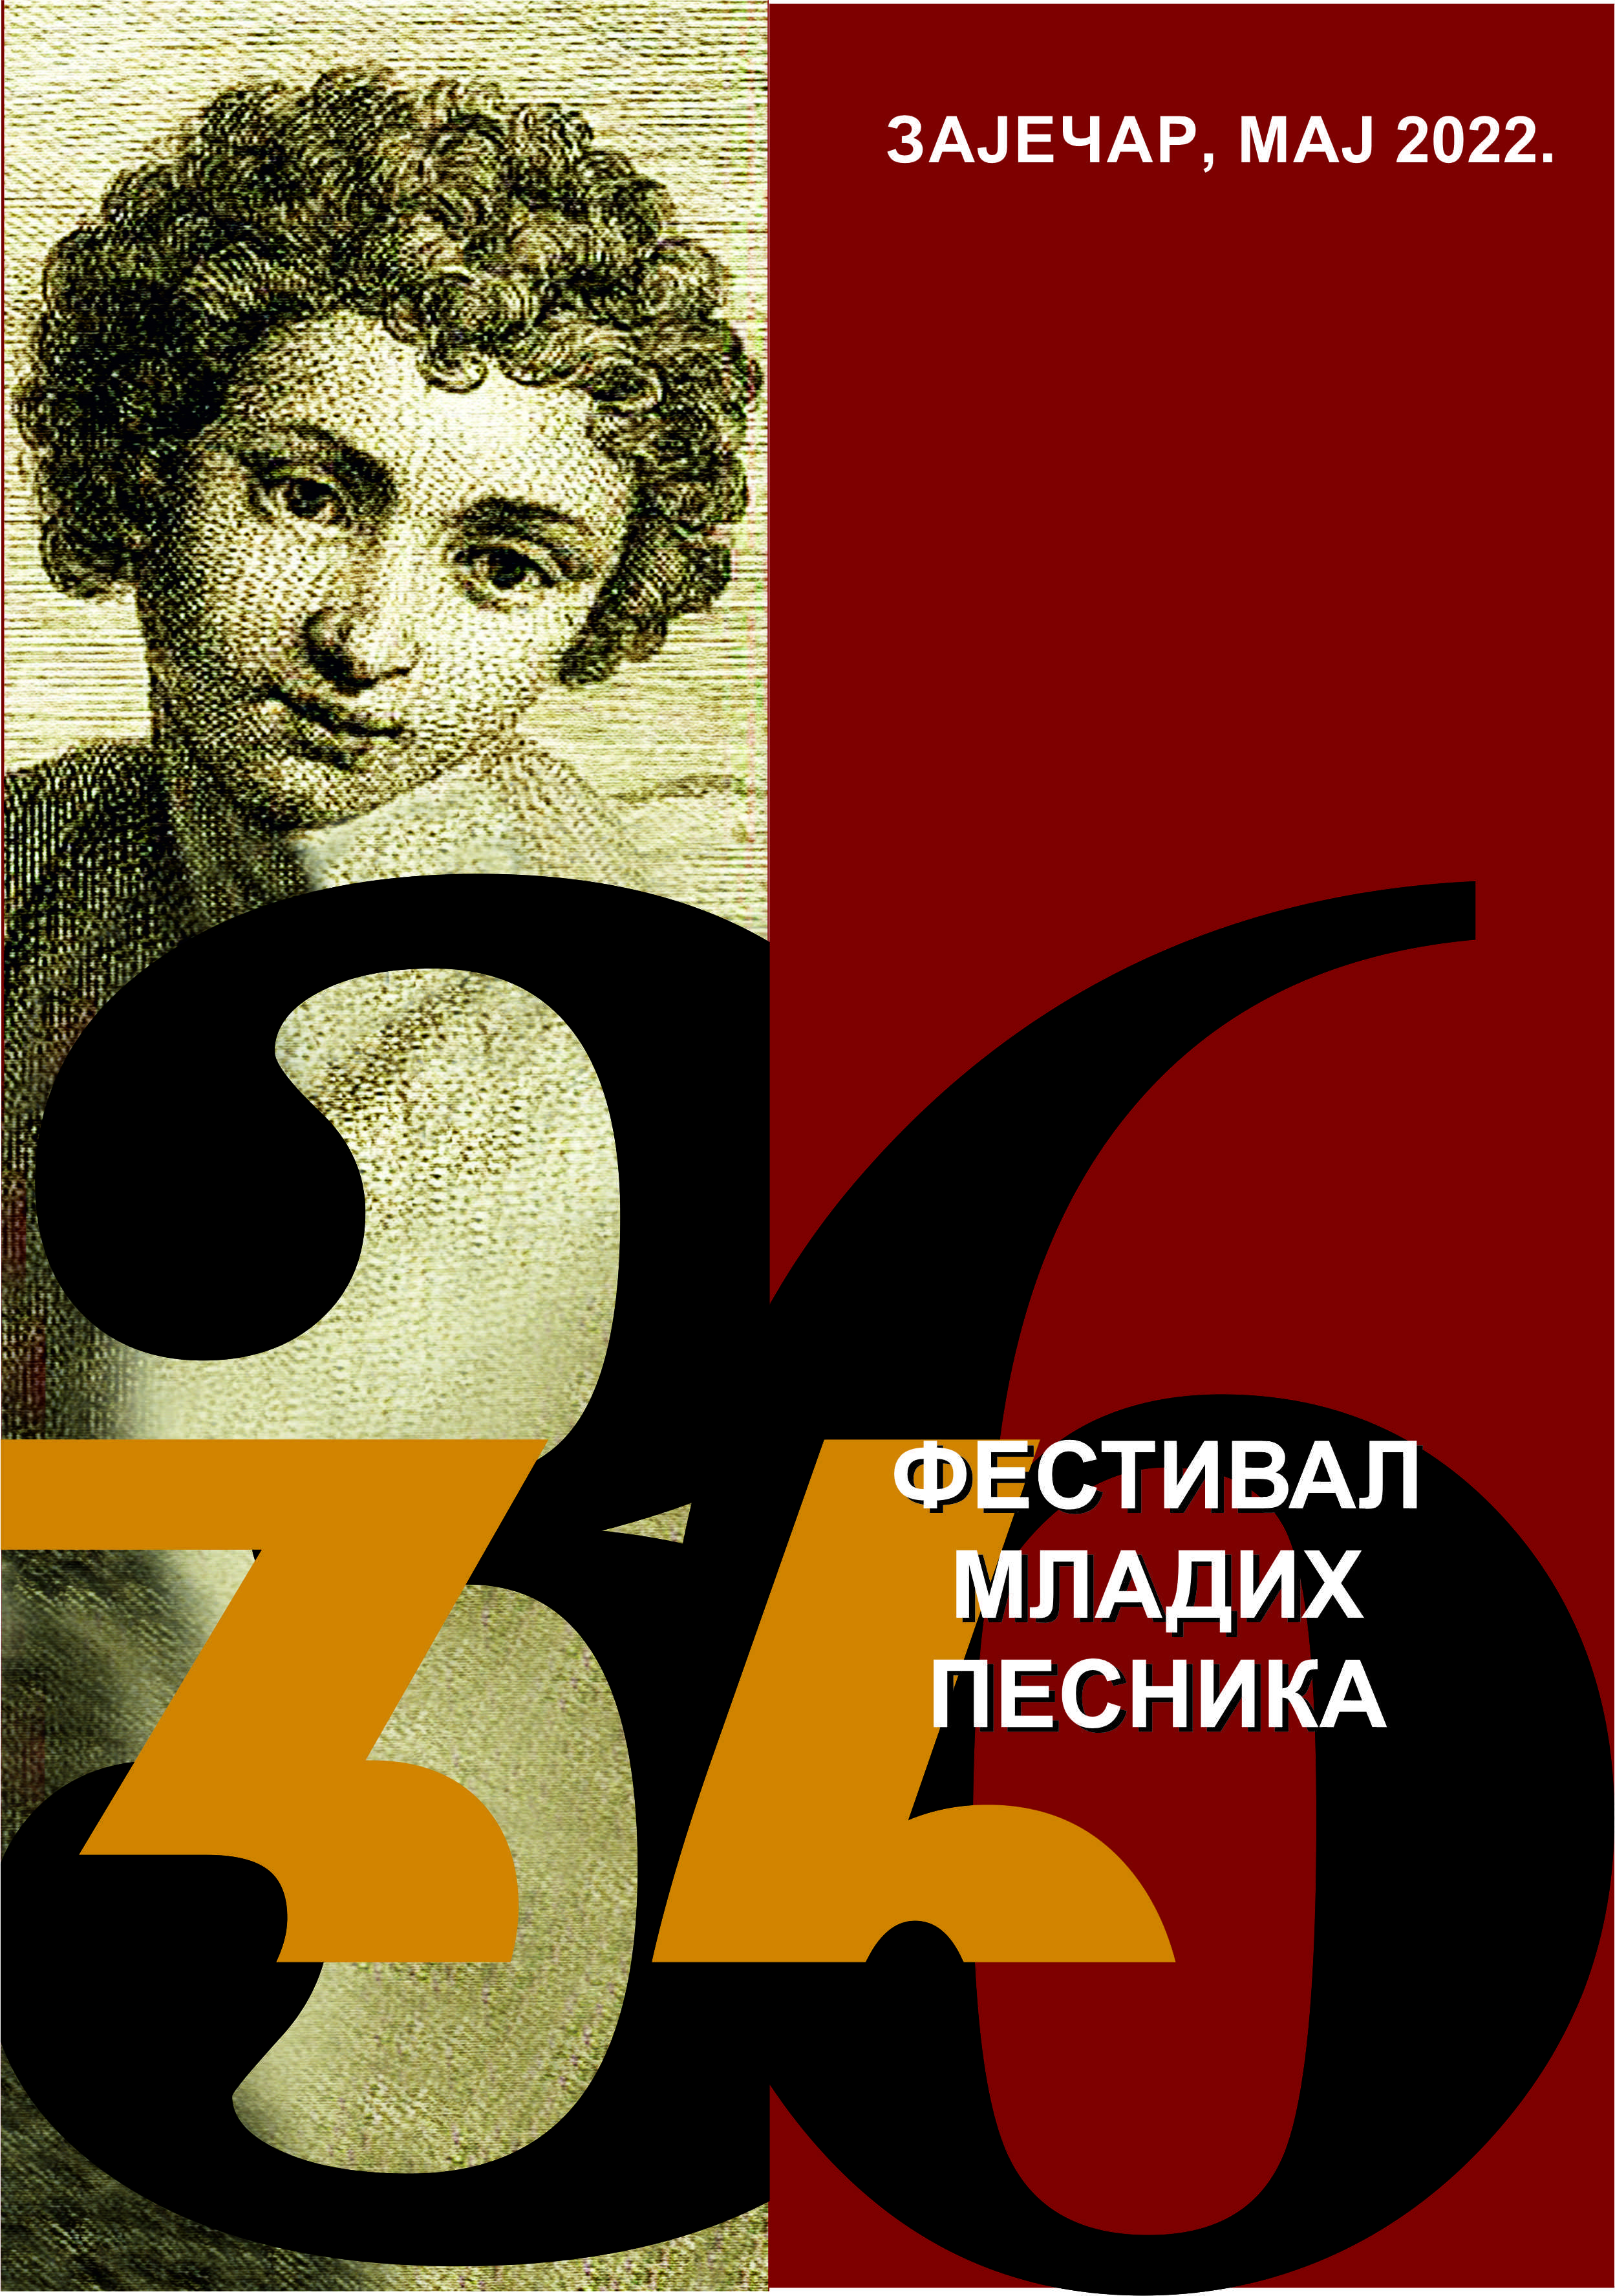 36. Festival mladih pesnika Logo min